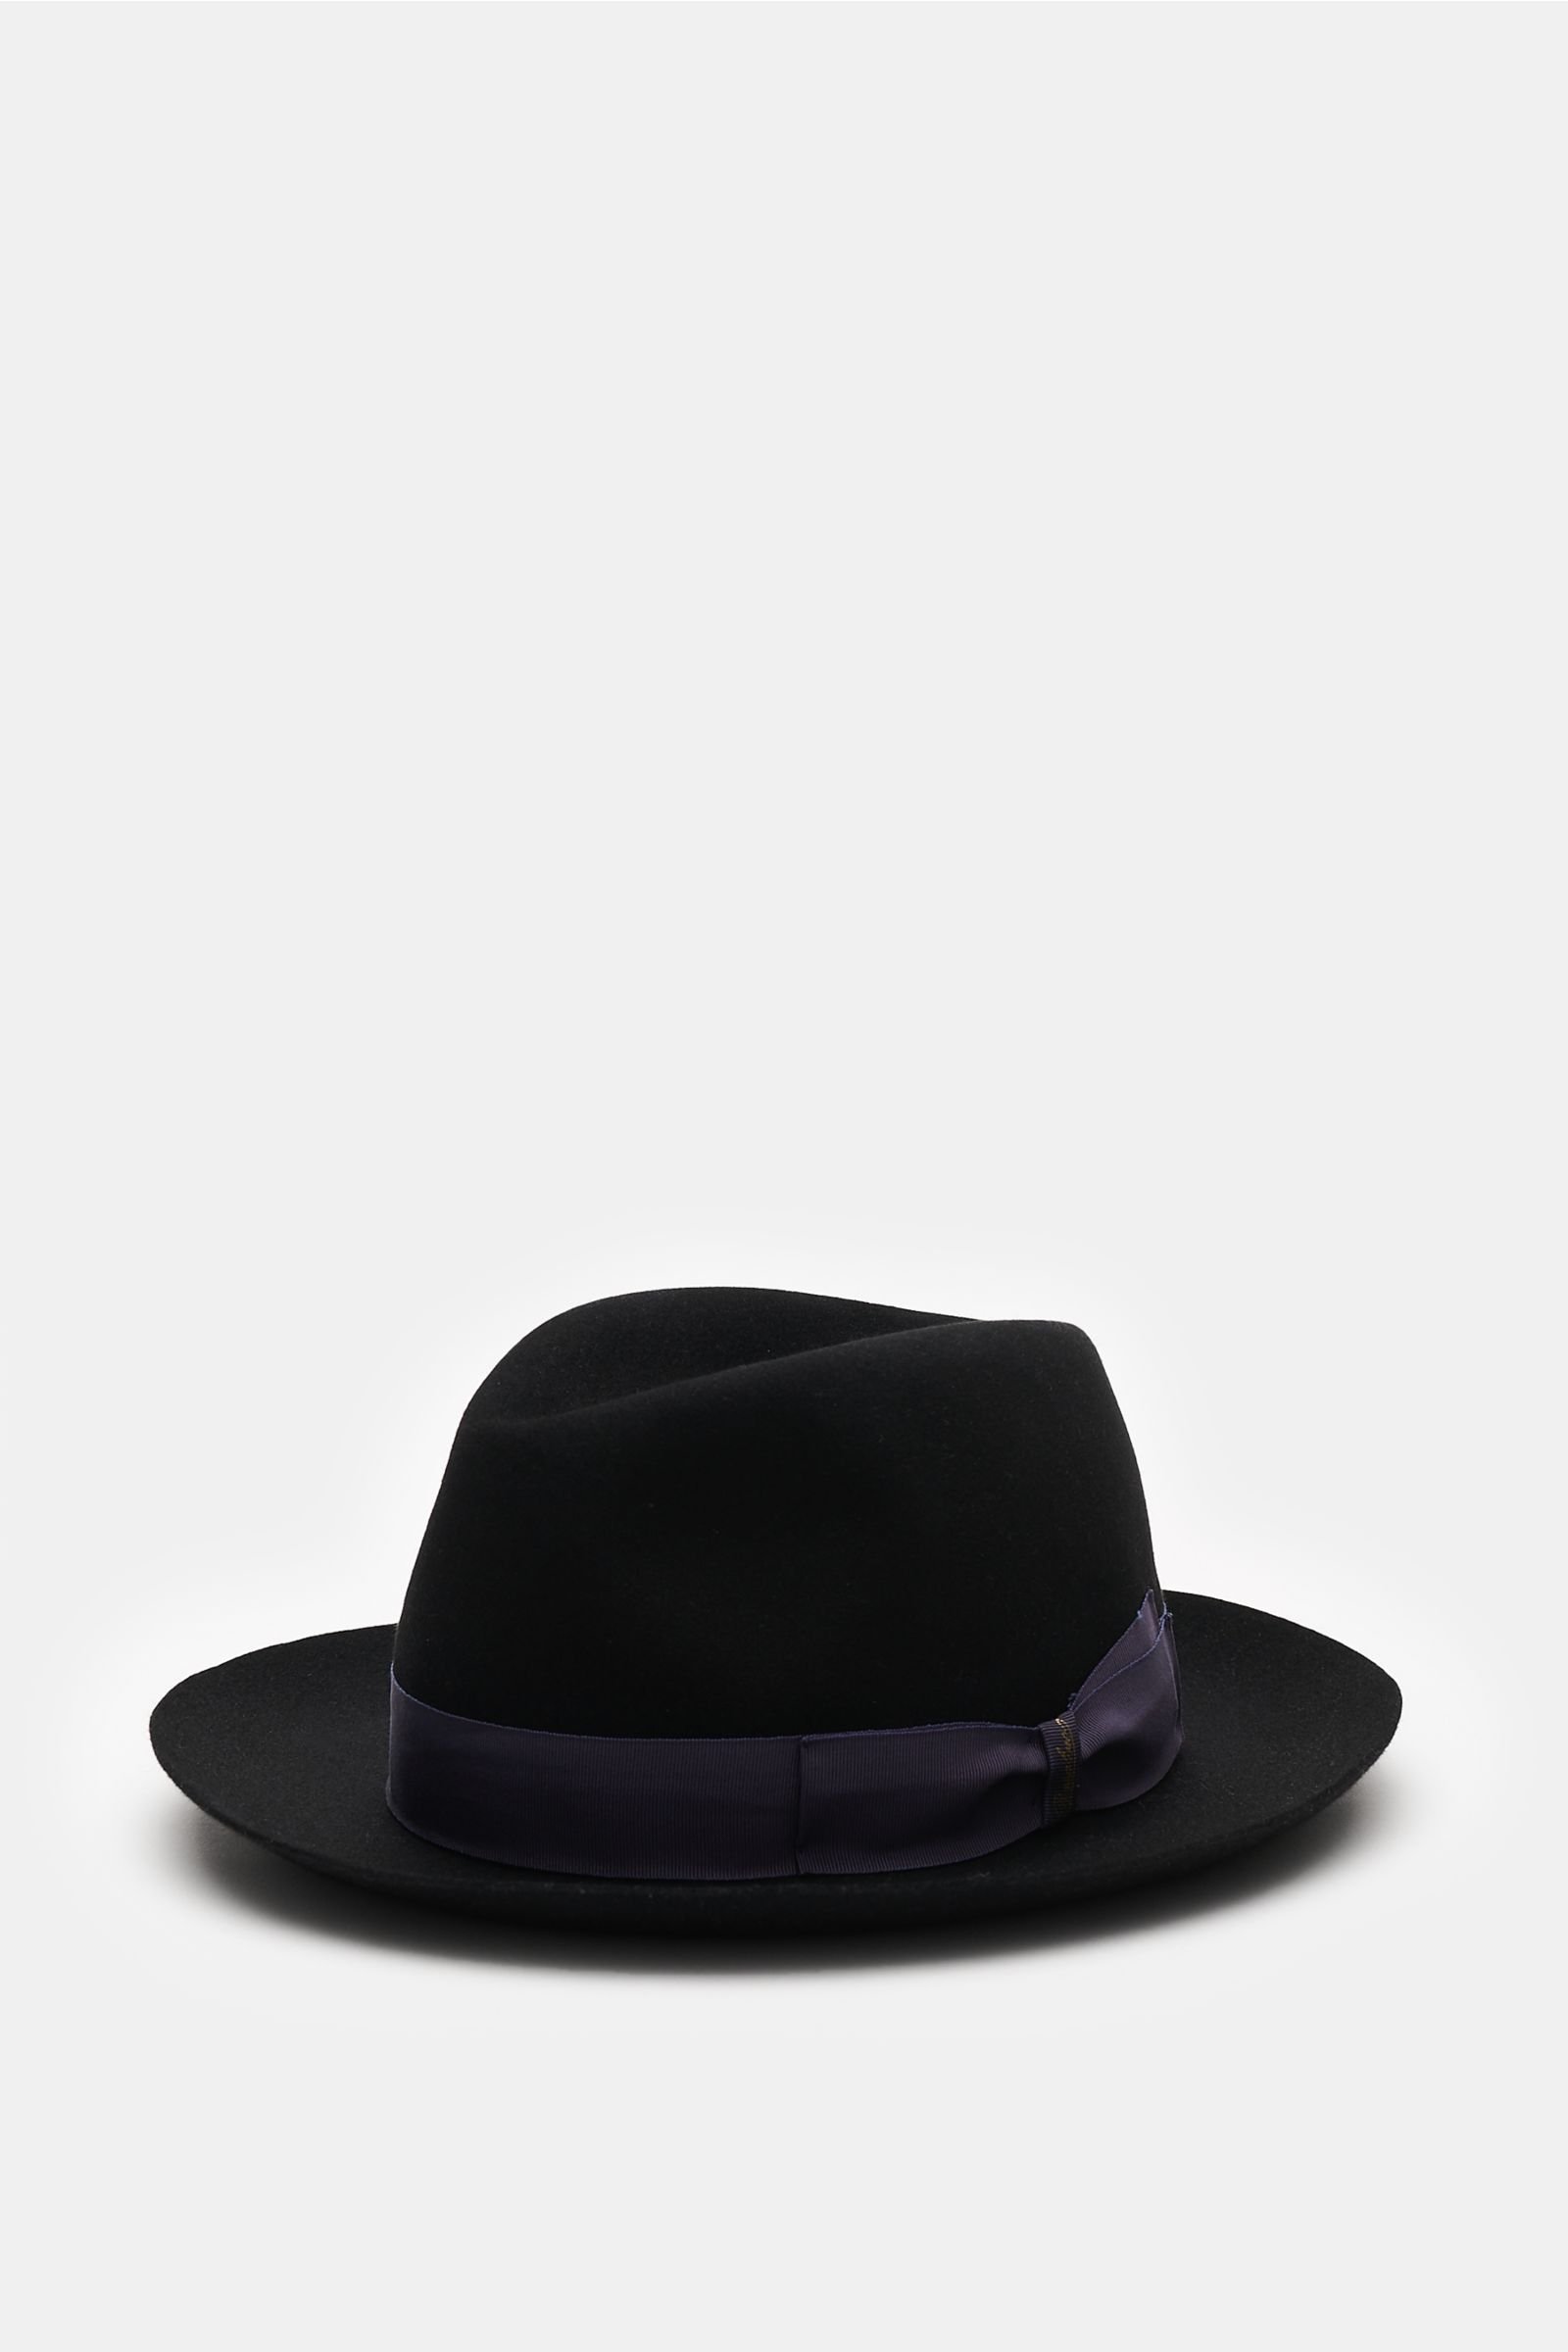 Hat 'Piuma' black